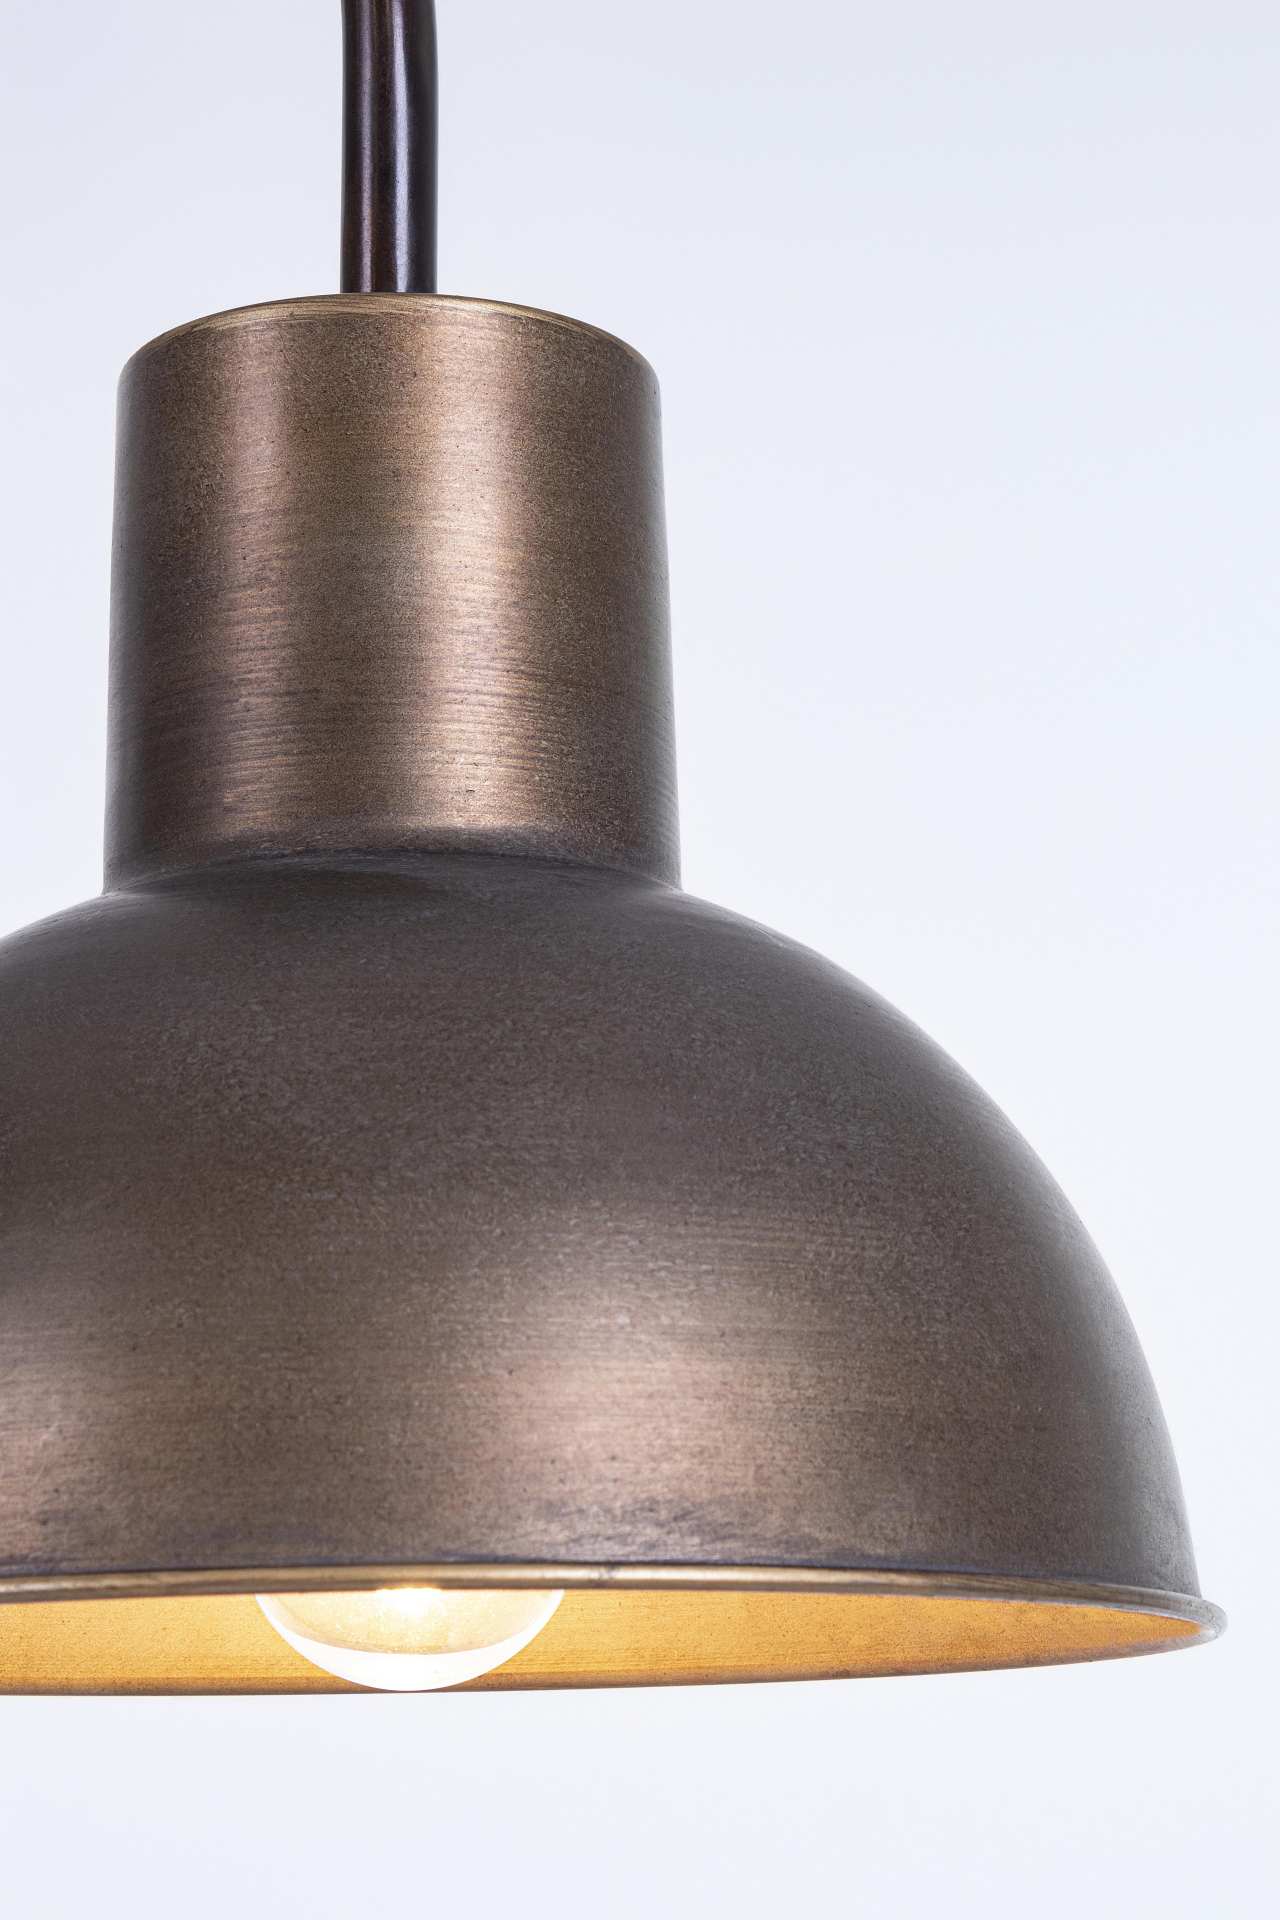 Die Stehleuchte Voguish überzeugt mit ihrem klassischen Design. Gefertigt wurde sie aus Metall, welches einen Schwarzen Farbton besitzt. Die Lampe besitzt eine Holzplatte in einer natürlichen Farbe. Die Lampe besitzt eine Höhe von 145 cm.